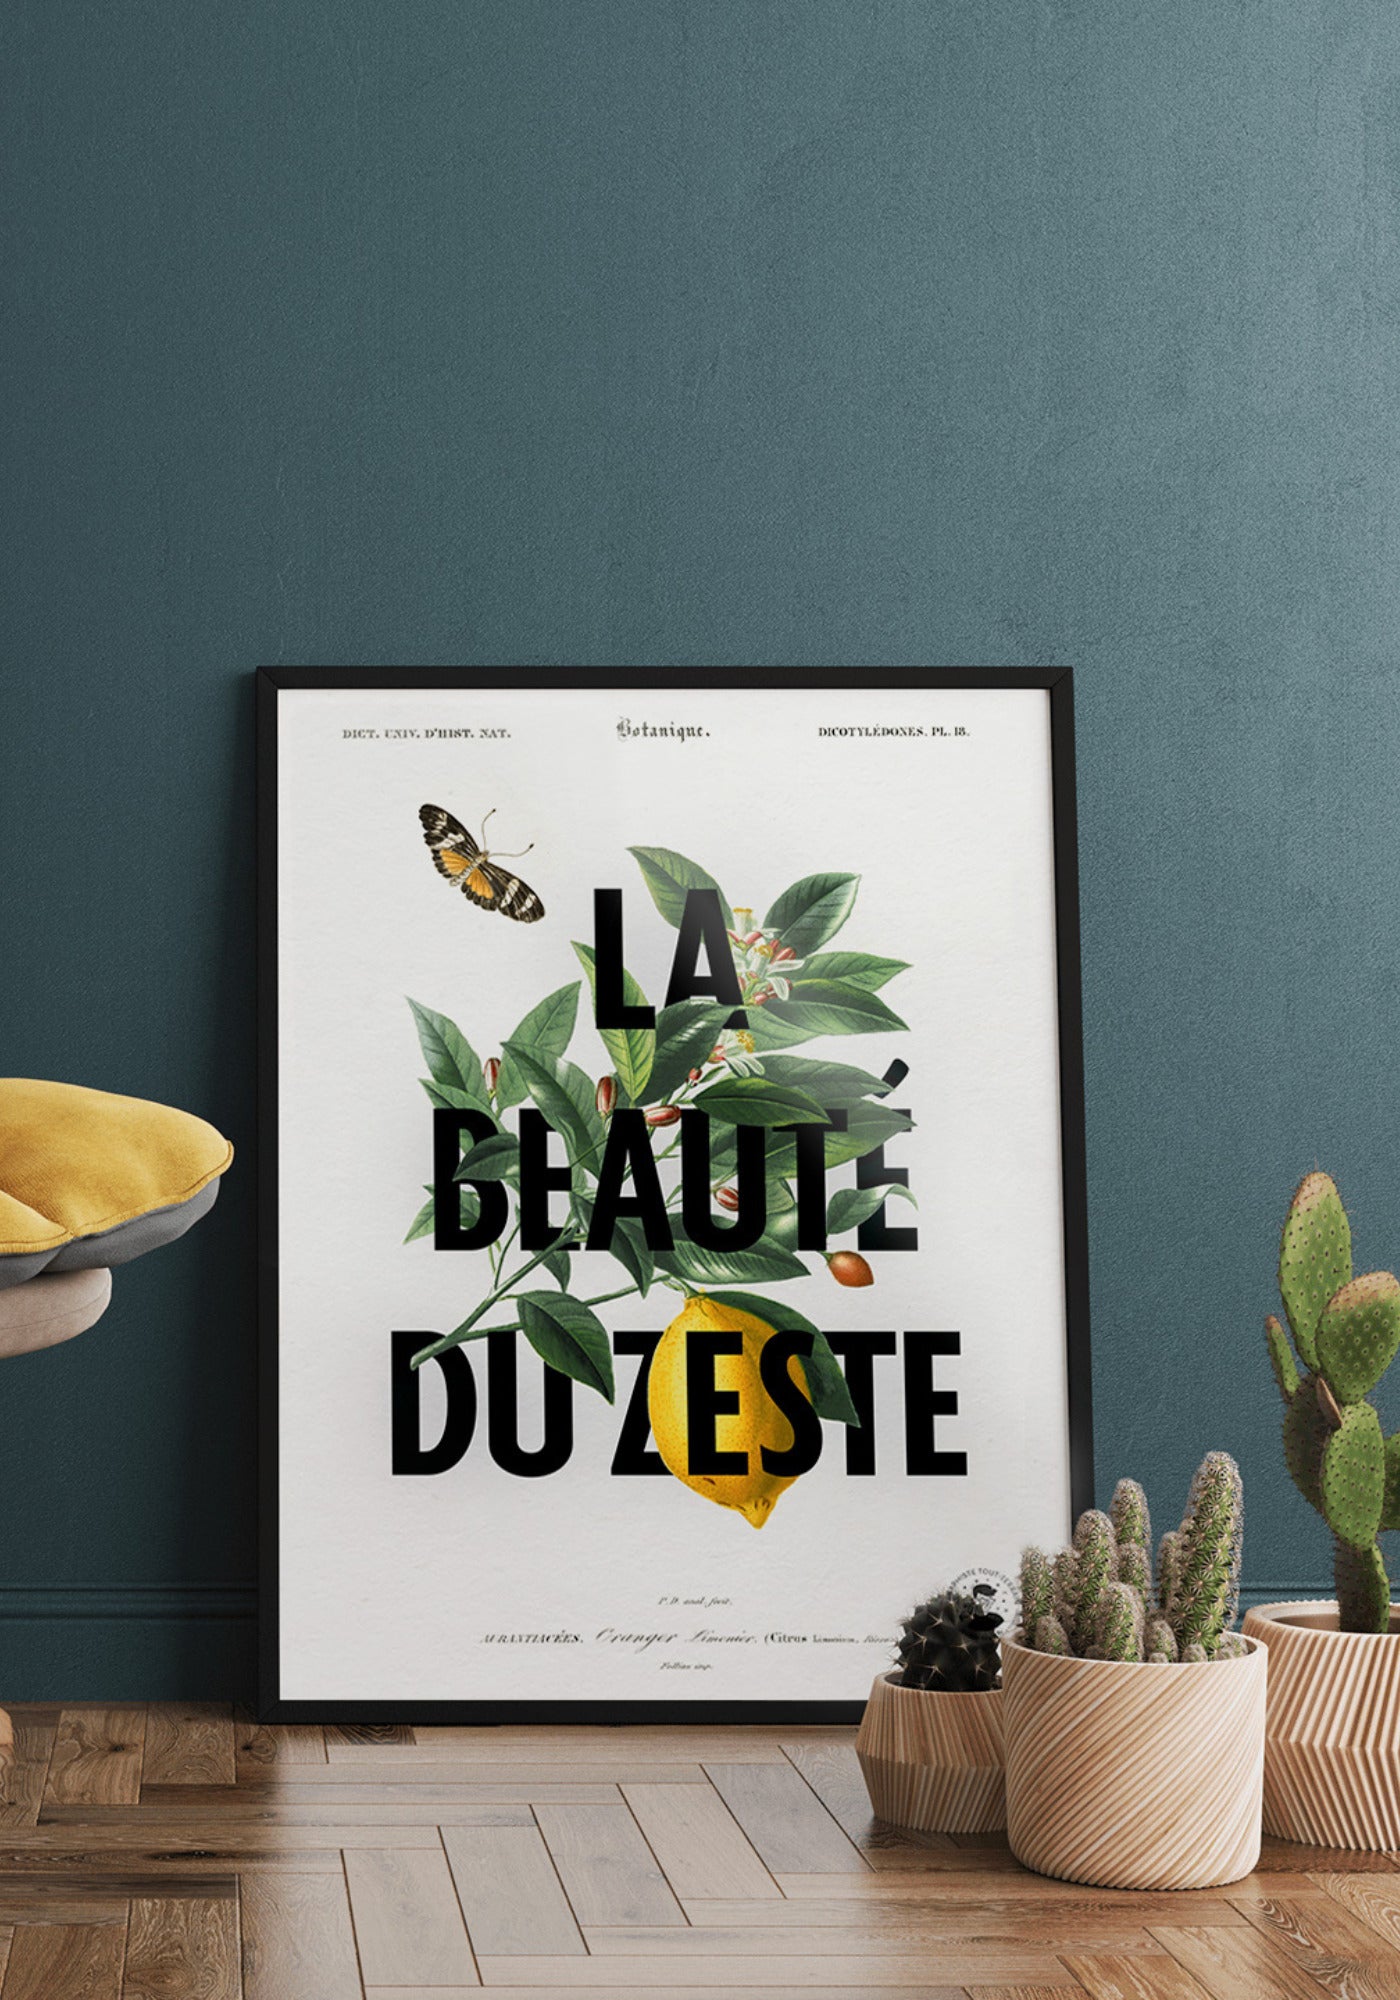 L'affiche illustration et typographie "La beauté du zeste" en 21x30 cm et 30x40 cm de chez Studio Topo posée au sol avec des cactus